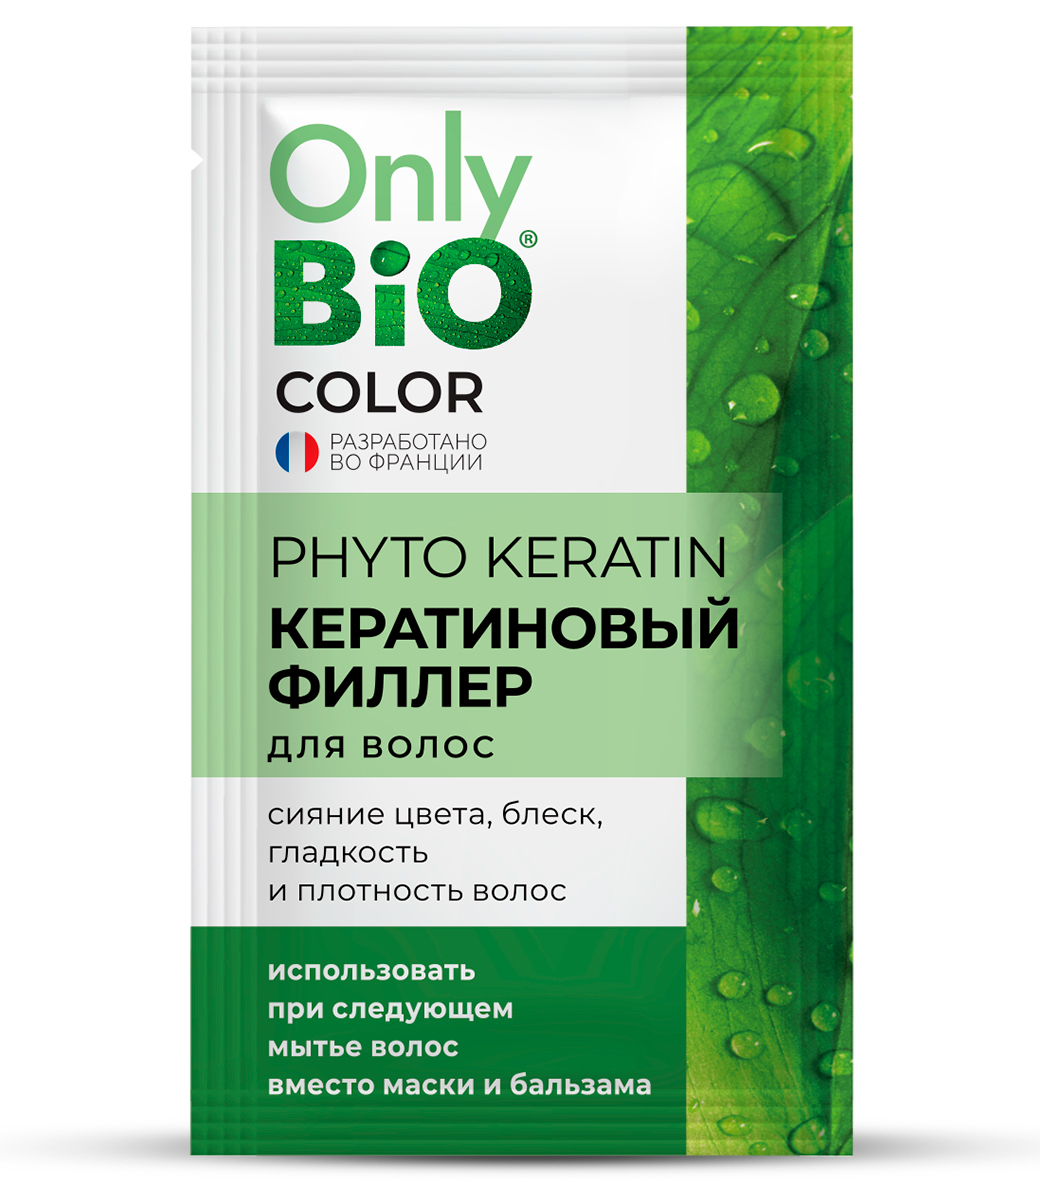 картинка Only Bio Стойкая крем-краска для волос Кератиновая, тон 5.6 Сочный гранат